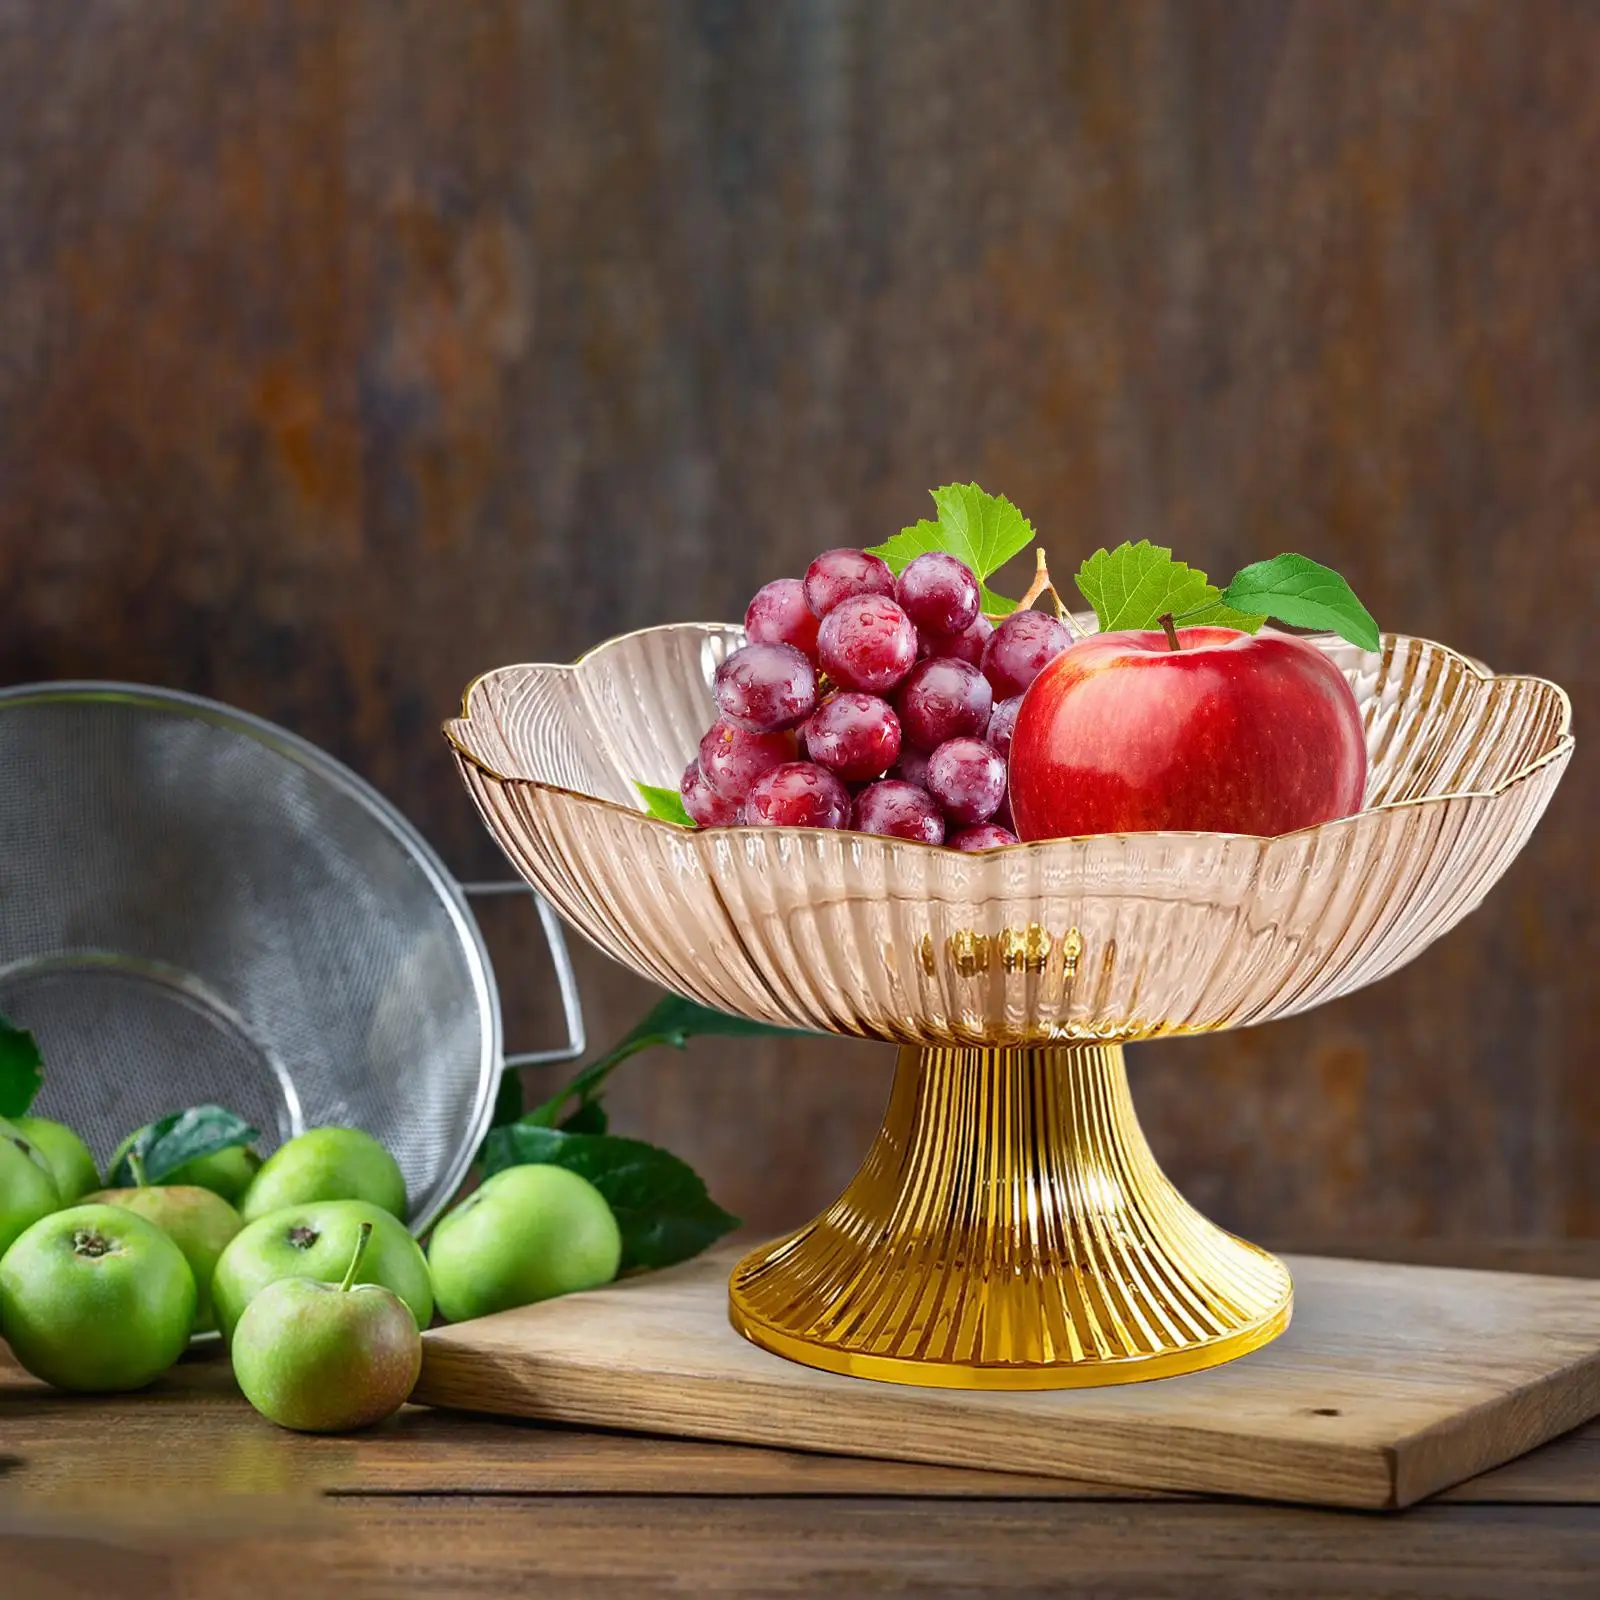 Snacks Fruit Basket Bowl Decorative Fruits Bowl Modern Fruit Holder for